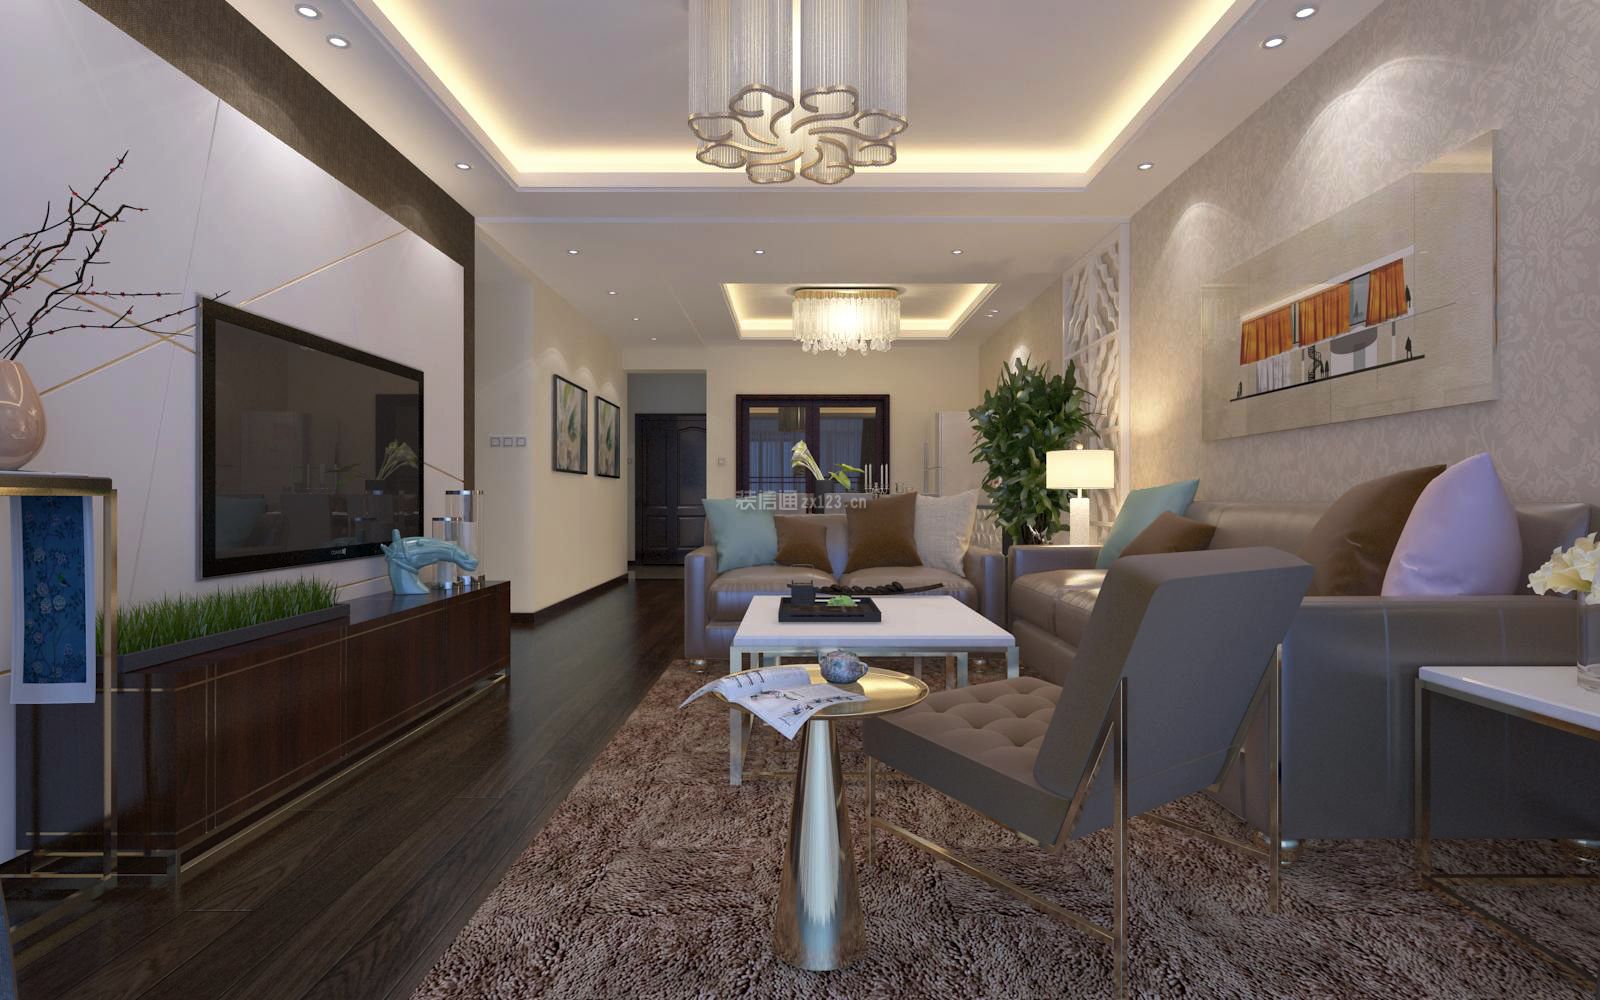 客厅现代灯具 客厅现代风格装修图 2020客厅现代沙发装修效果图 